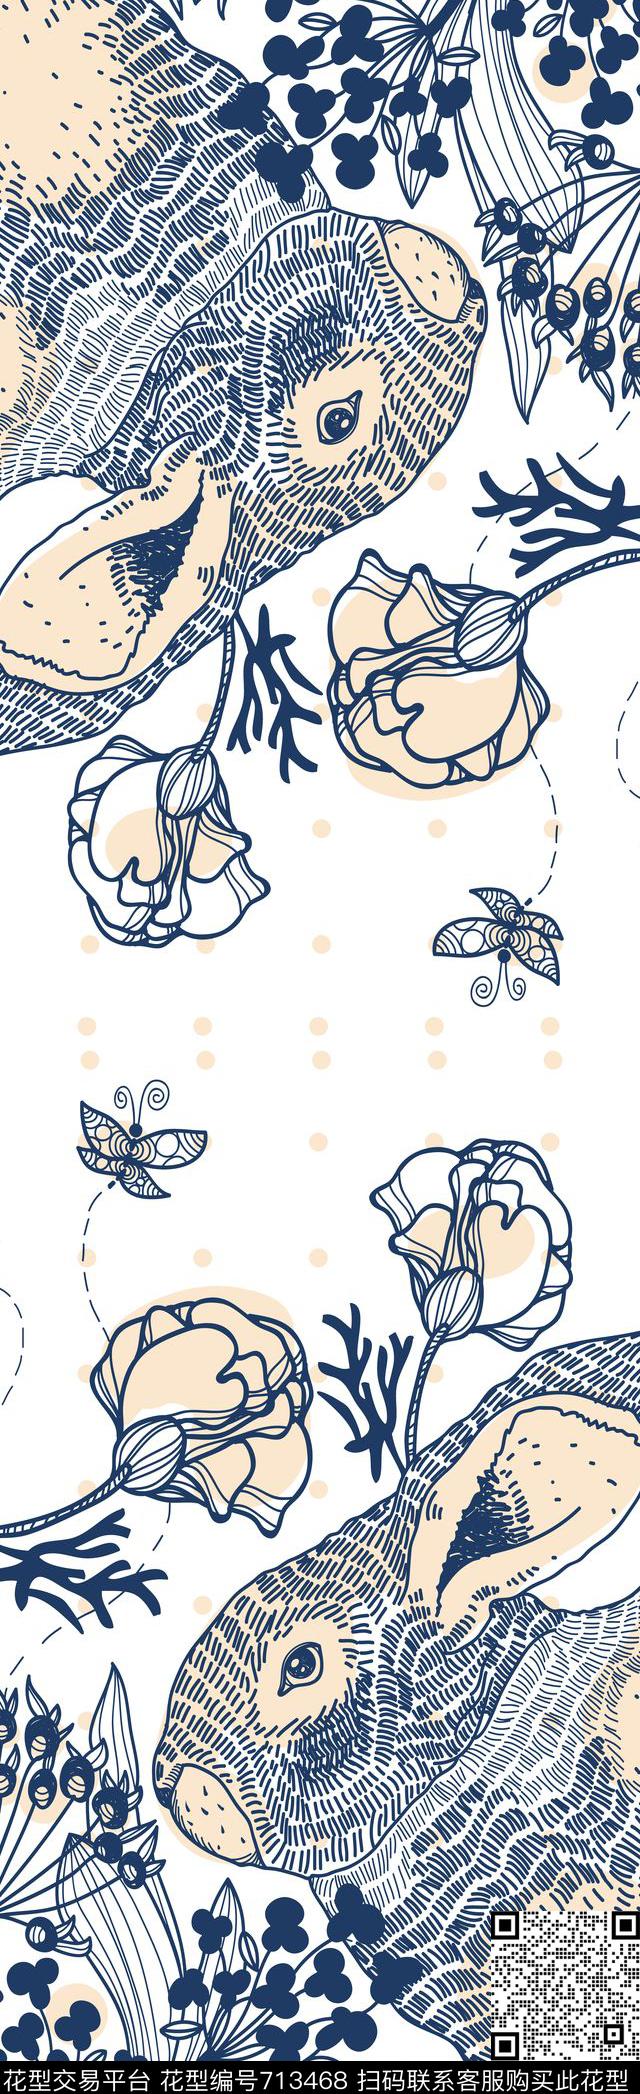 59.jpg - 713468 - 卡通 动物长围巾 小兔子长丝巾 - 传统印花花型 － 长巾花型设计 － 瓦栏